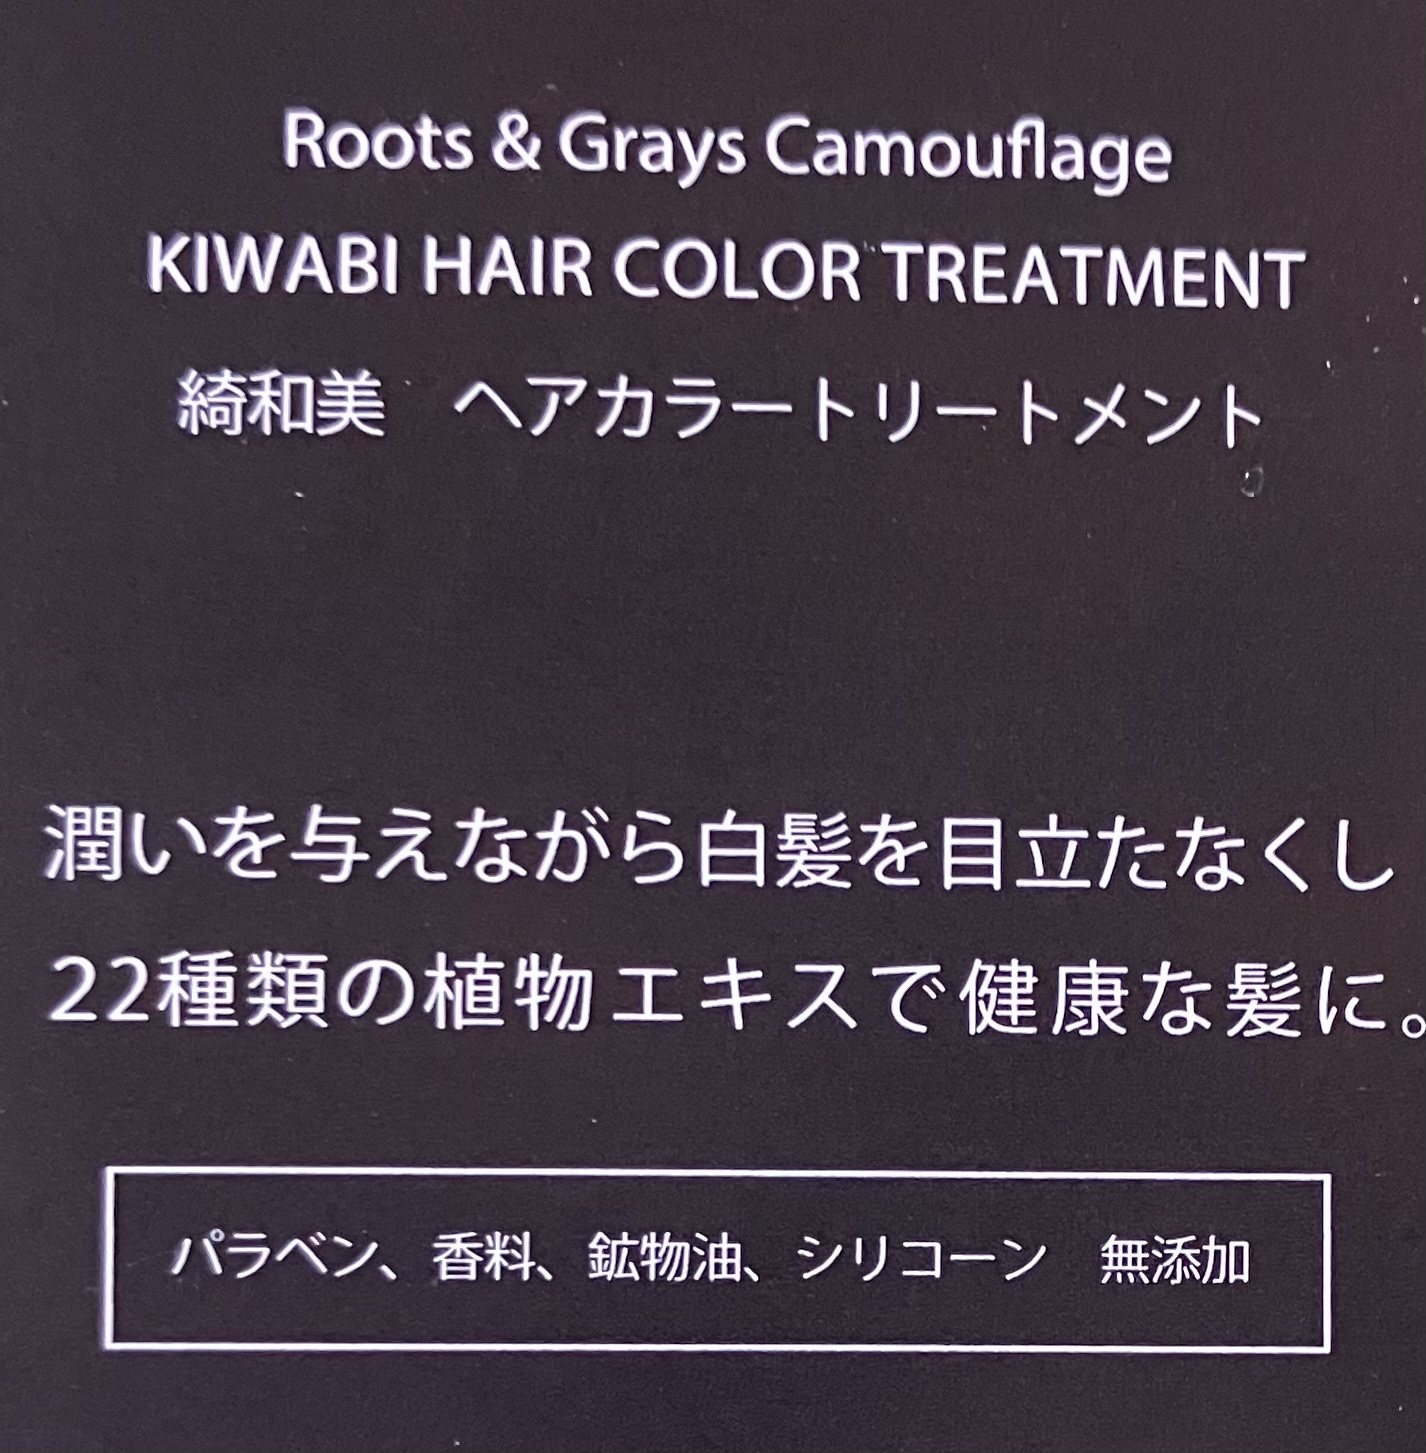 綺和美(KIWABI) ROOT VANISH 白髪染めヘアカラートリートメントの良い点・メリットに関するれなさんの口コミ画像1